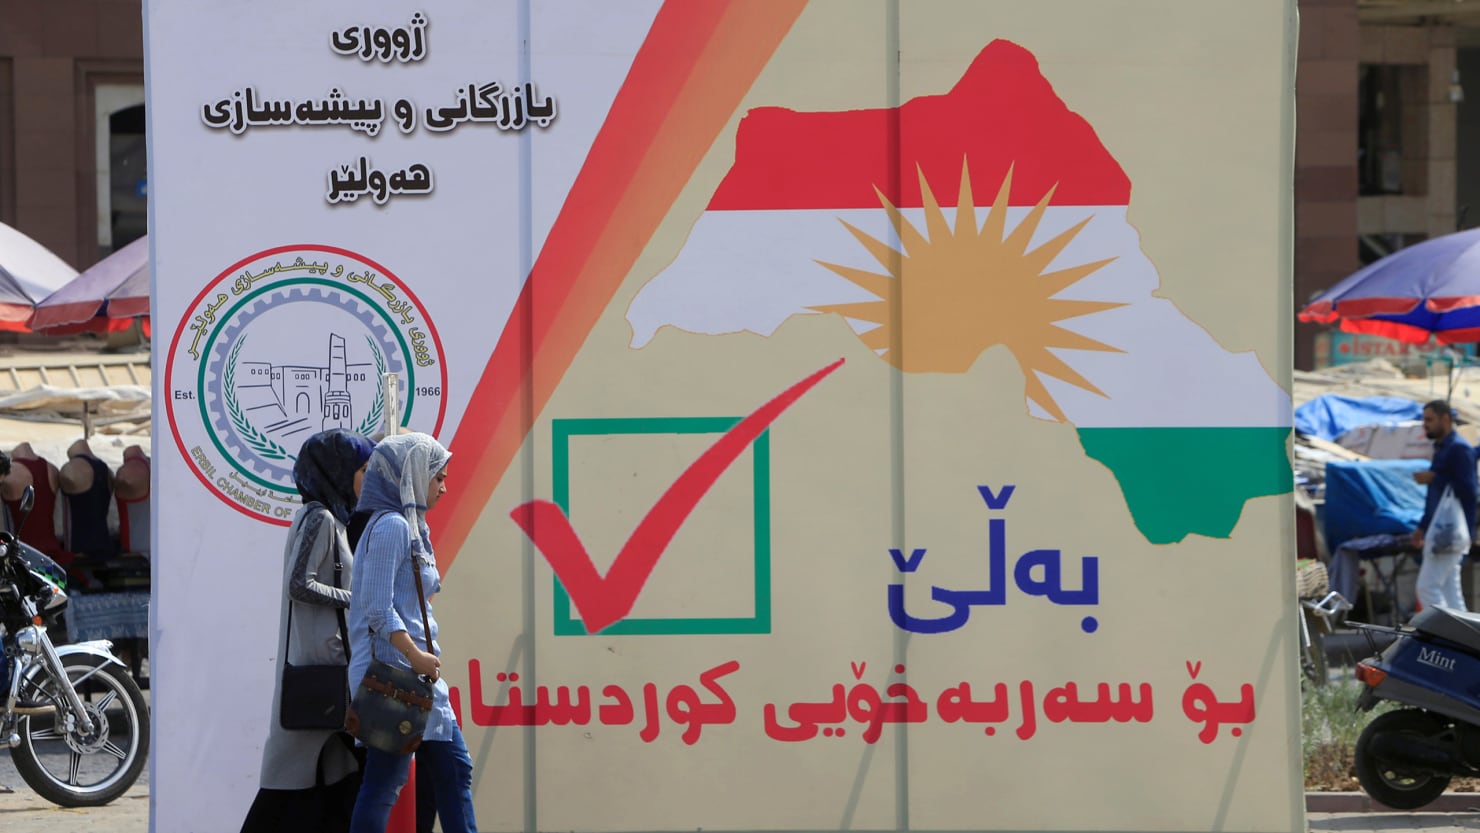 كردستان العراق: الانتخابات البرلمانية في 20 أكتوبر